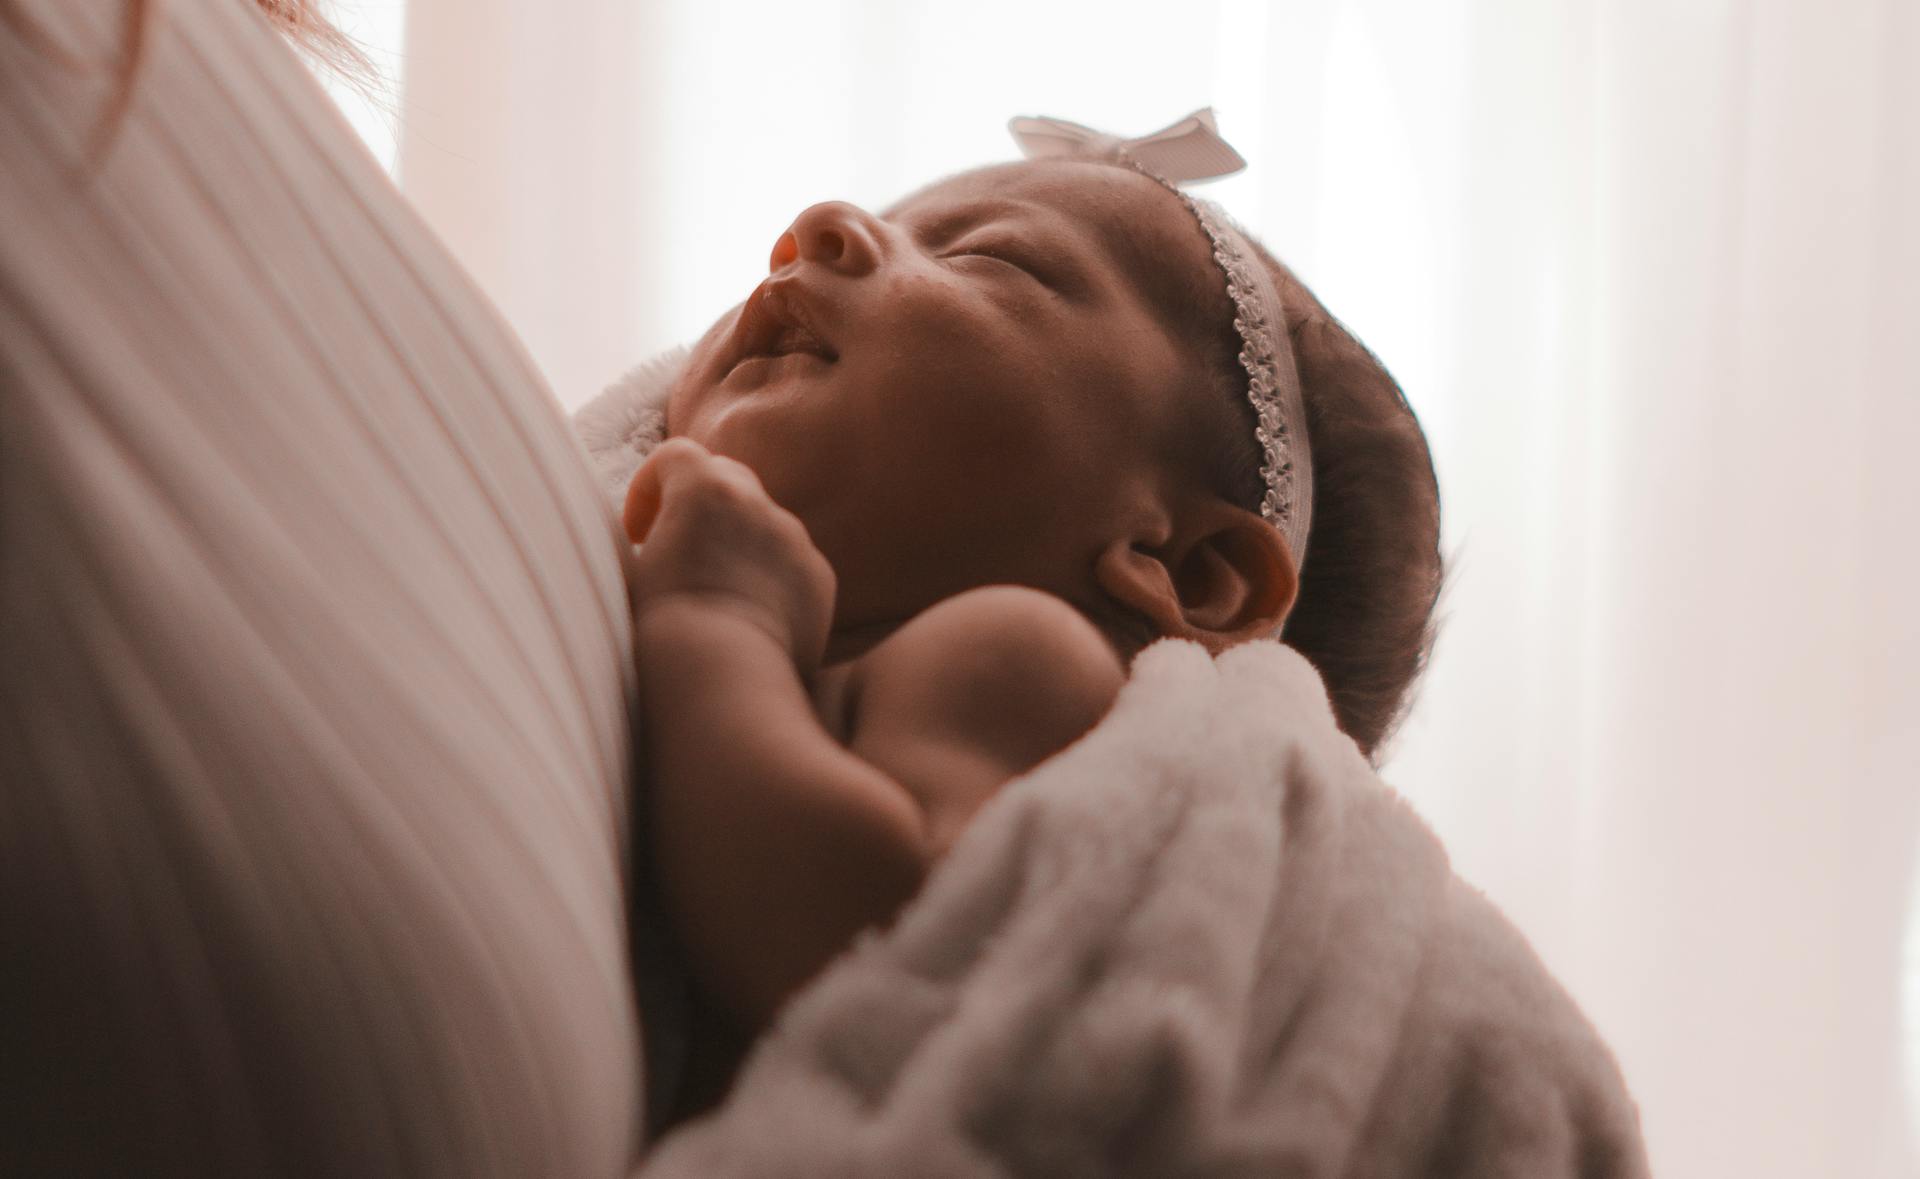 Une personne tenant un bébé | Source : Pexels